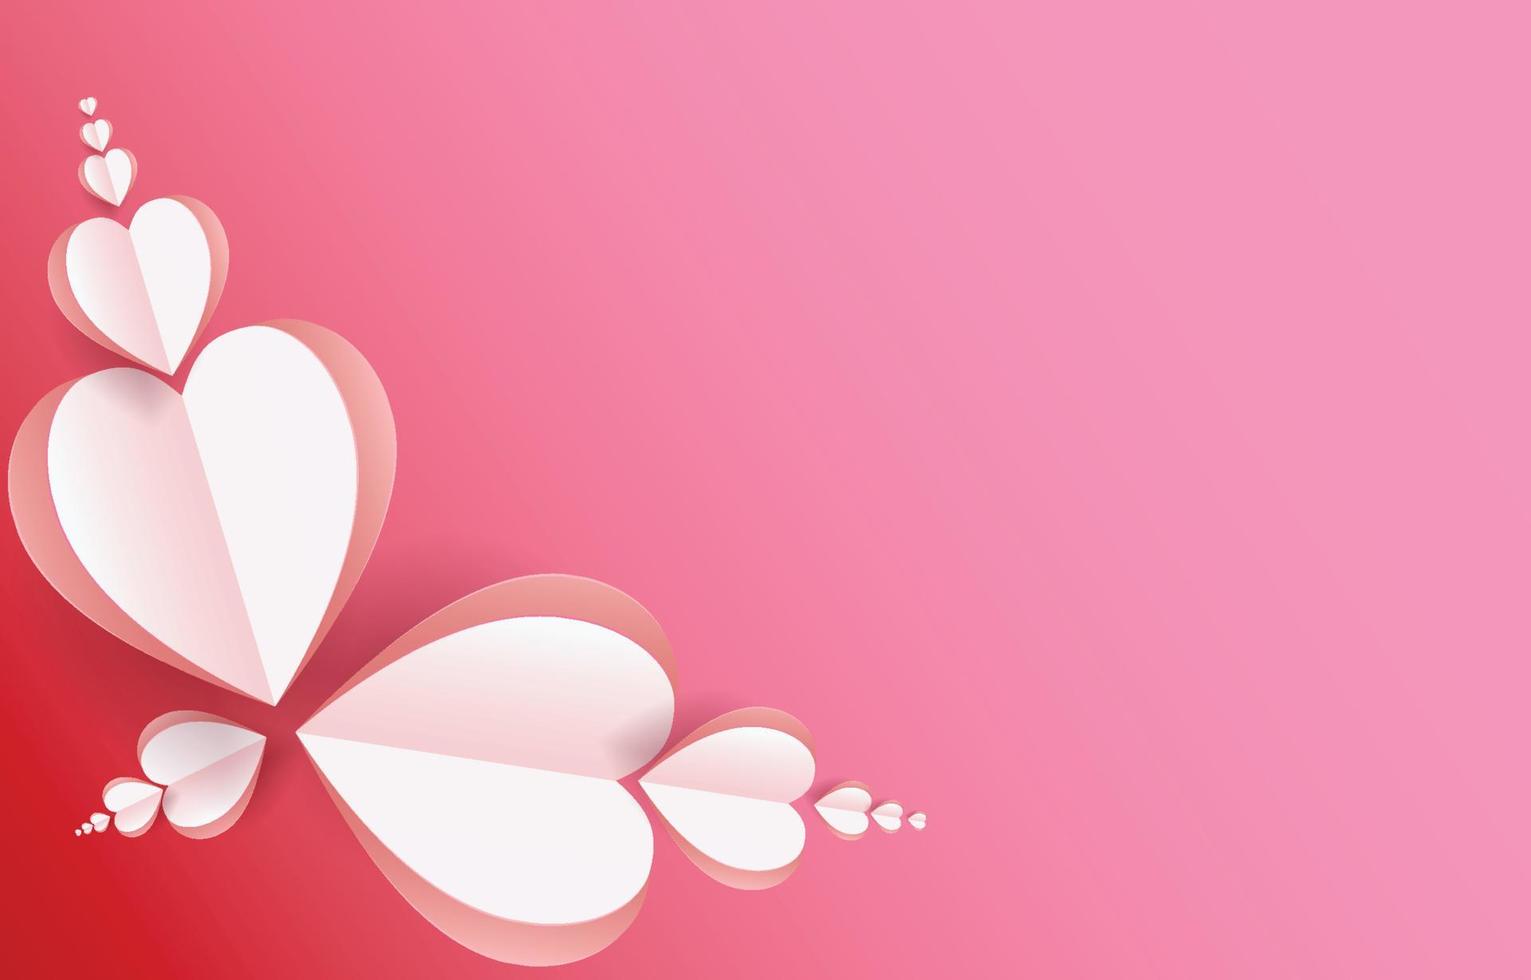 elementi tagliati in carta a forma di cuore che volano su sfondo rosa e dolce. simboli vettoriali d'amore per il design della cartolina d'auguri di San Valentino, compleanno o festa della mamma.